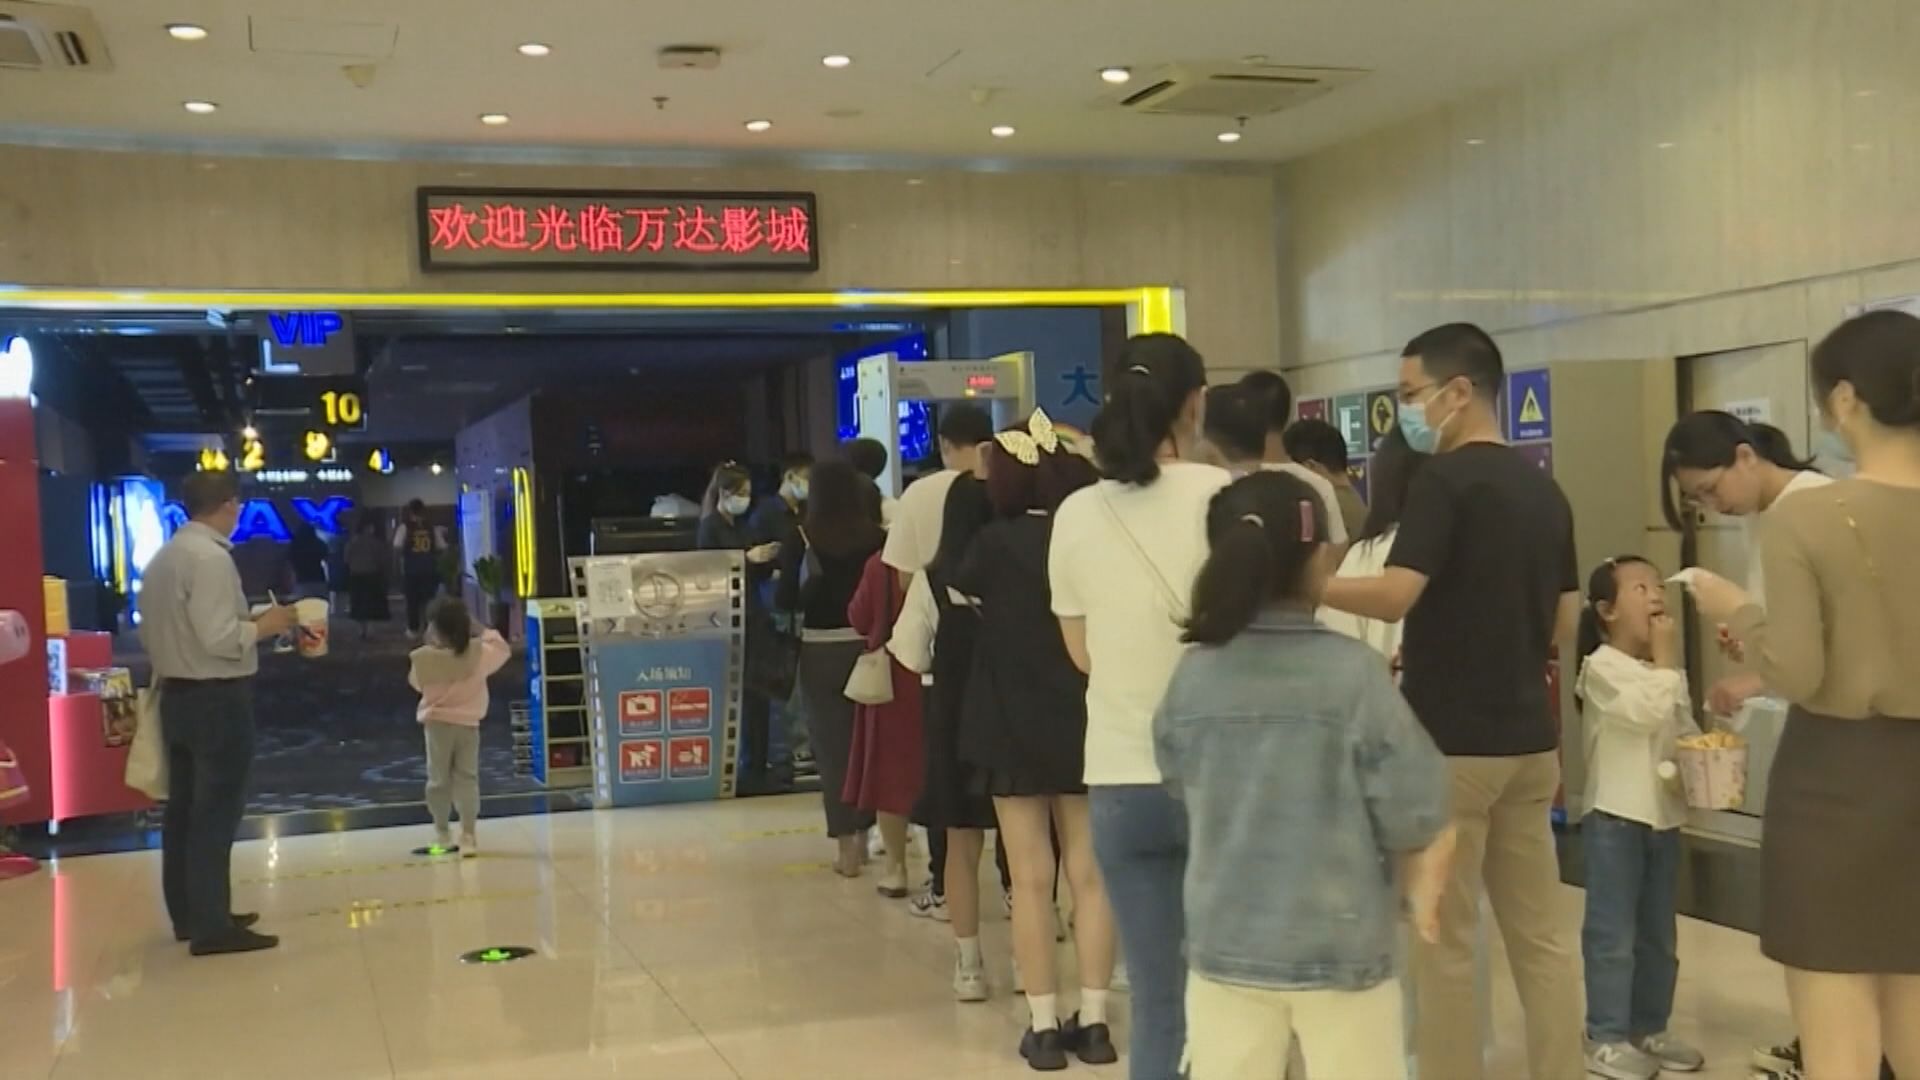 【國慶長假】周邊遊人均消費升30% 電影票房衝破14億人幣